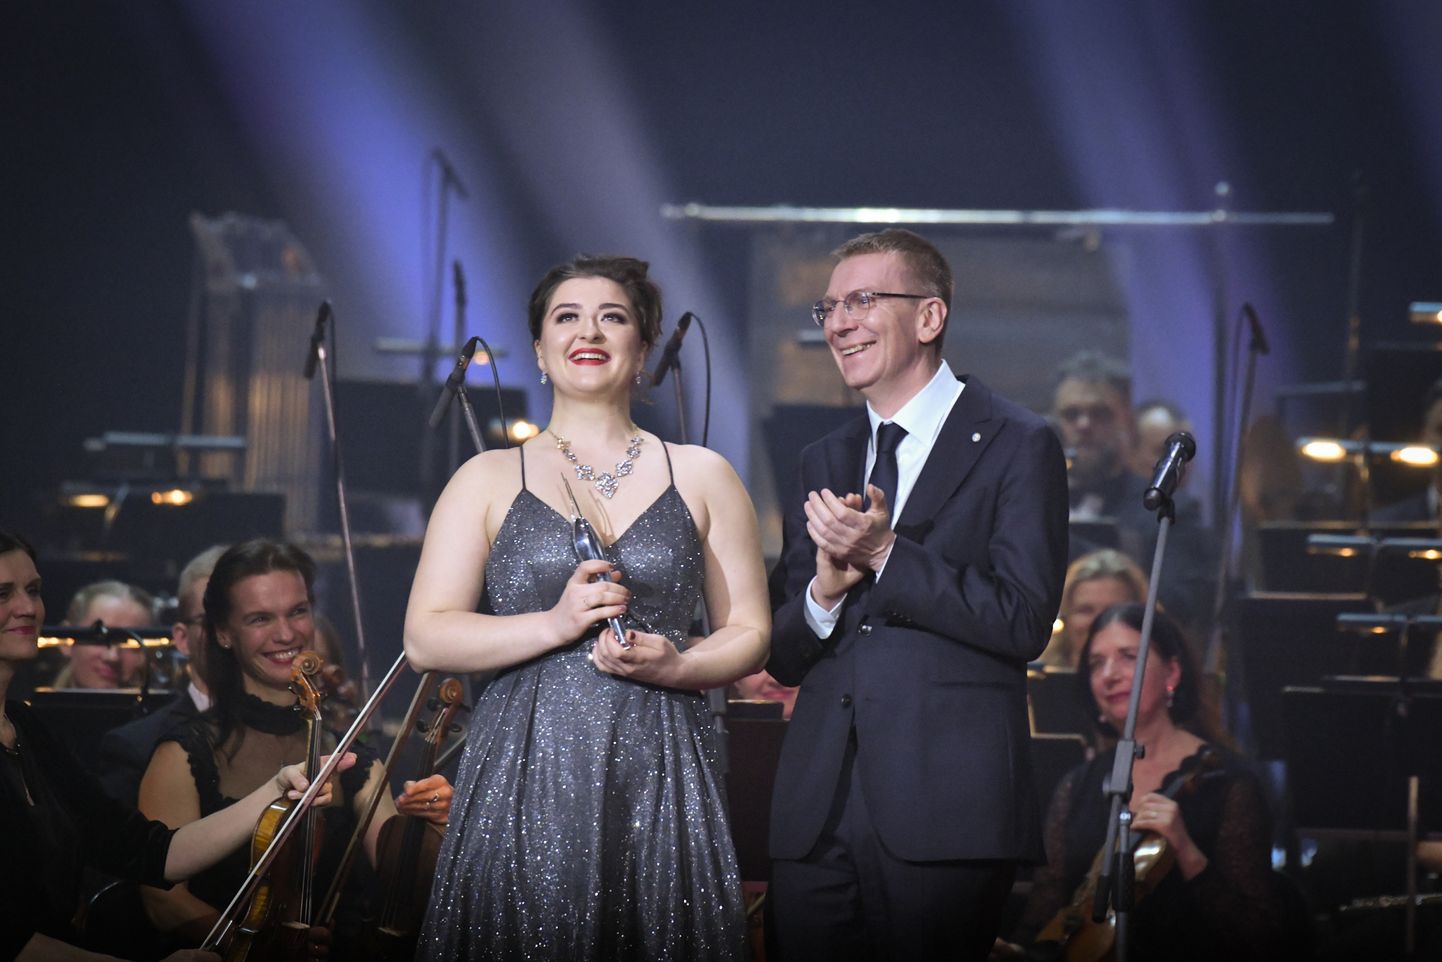 Эдгар Ринкевич вручает бриз лучшему молодому музыканту на Большой музыкальной церемонии